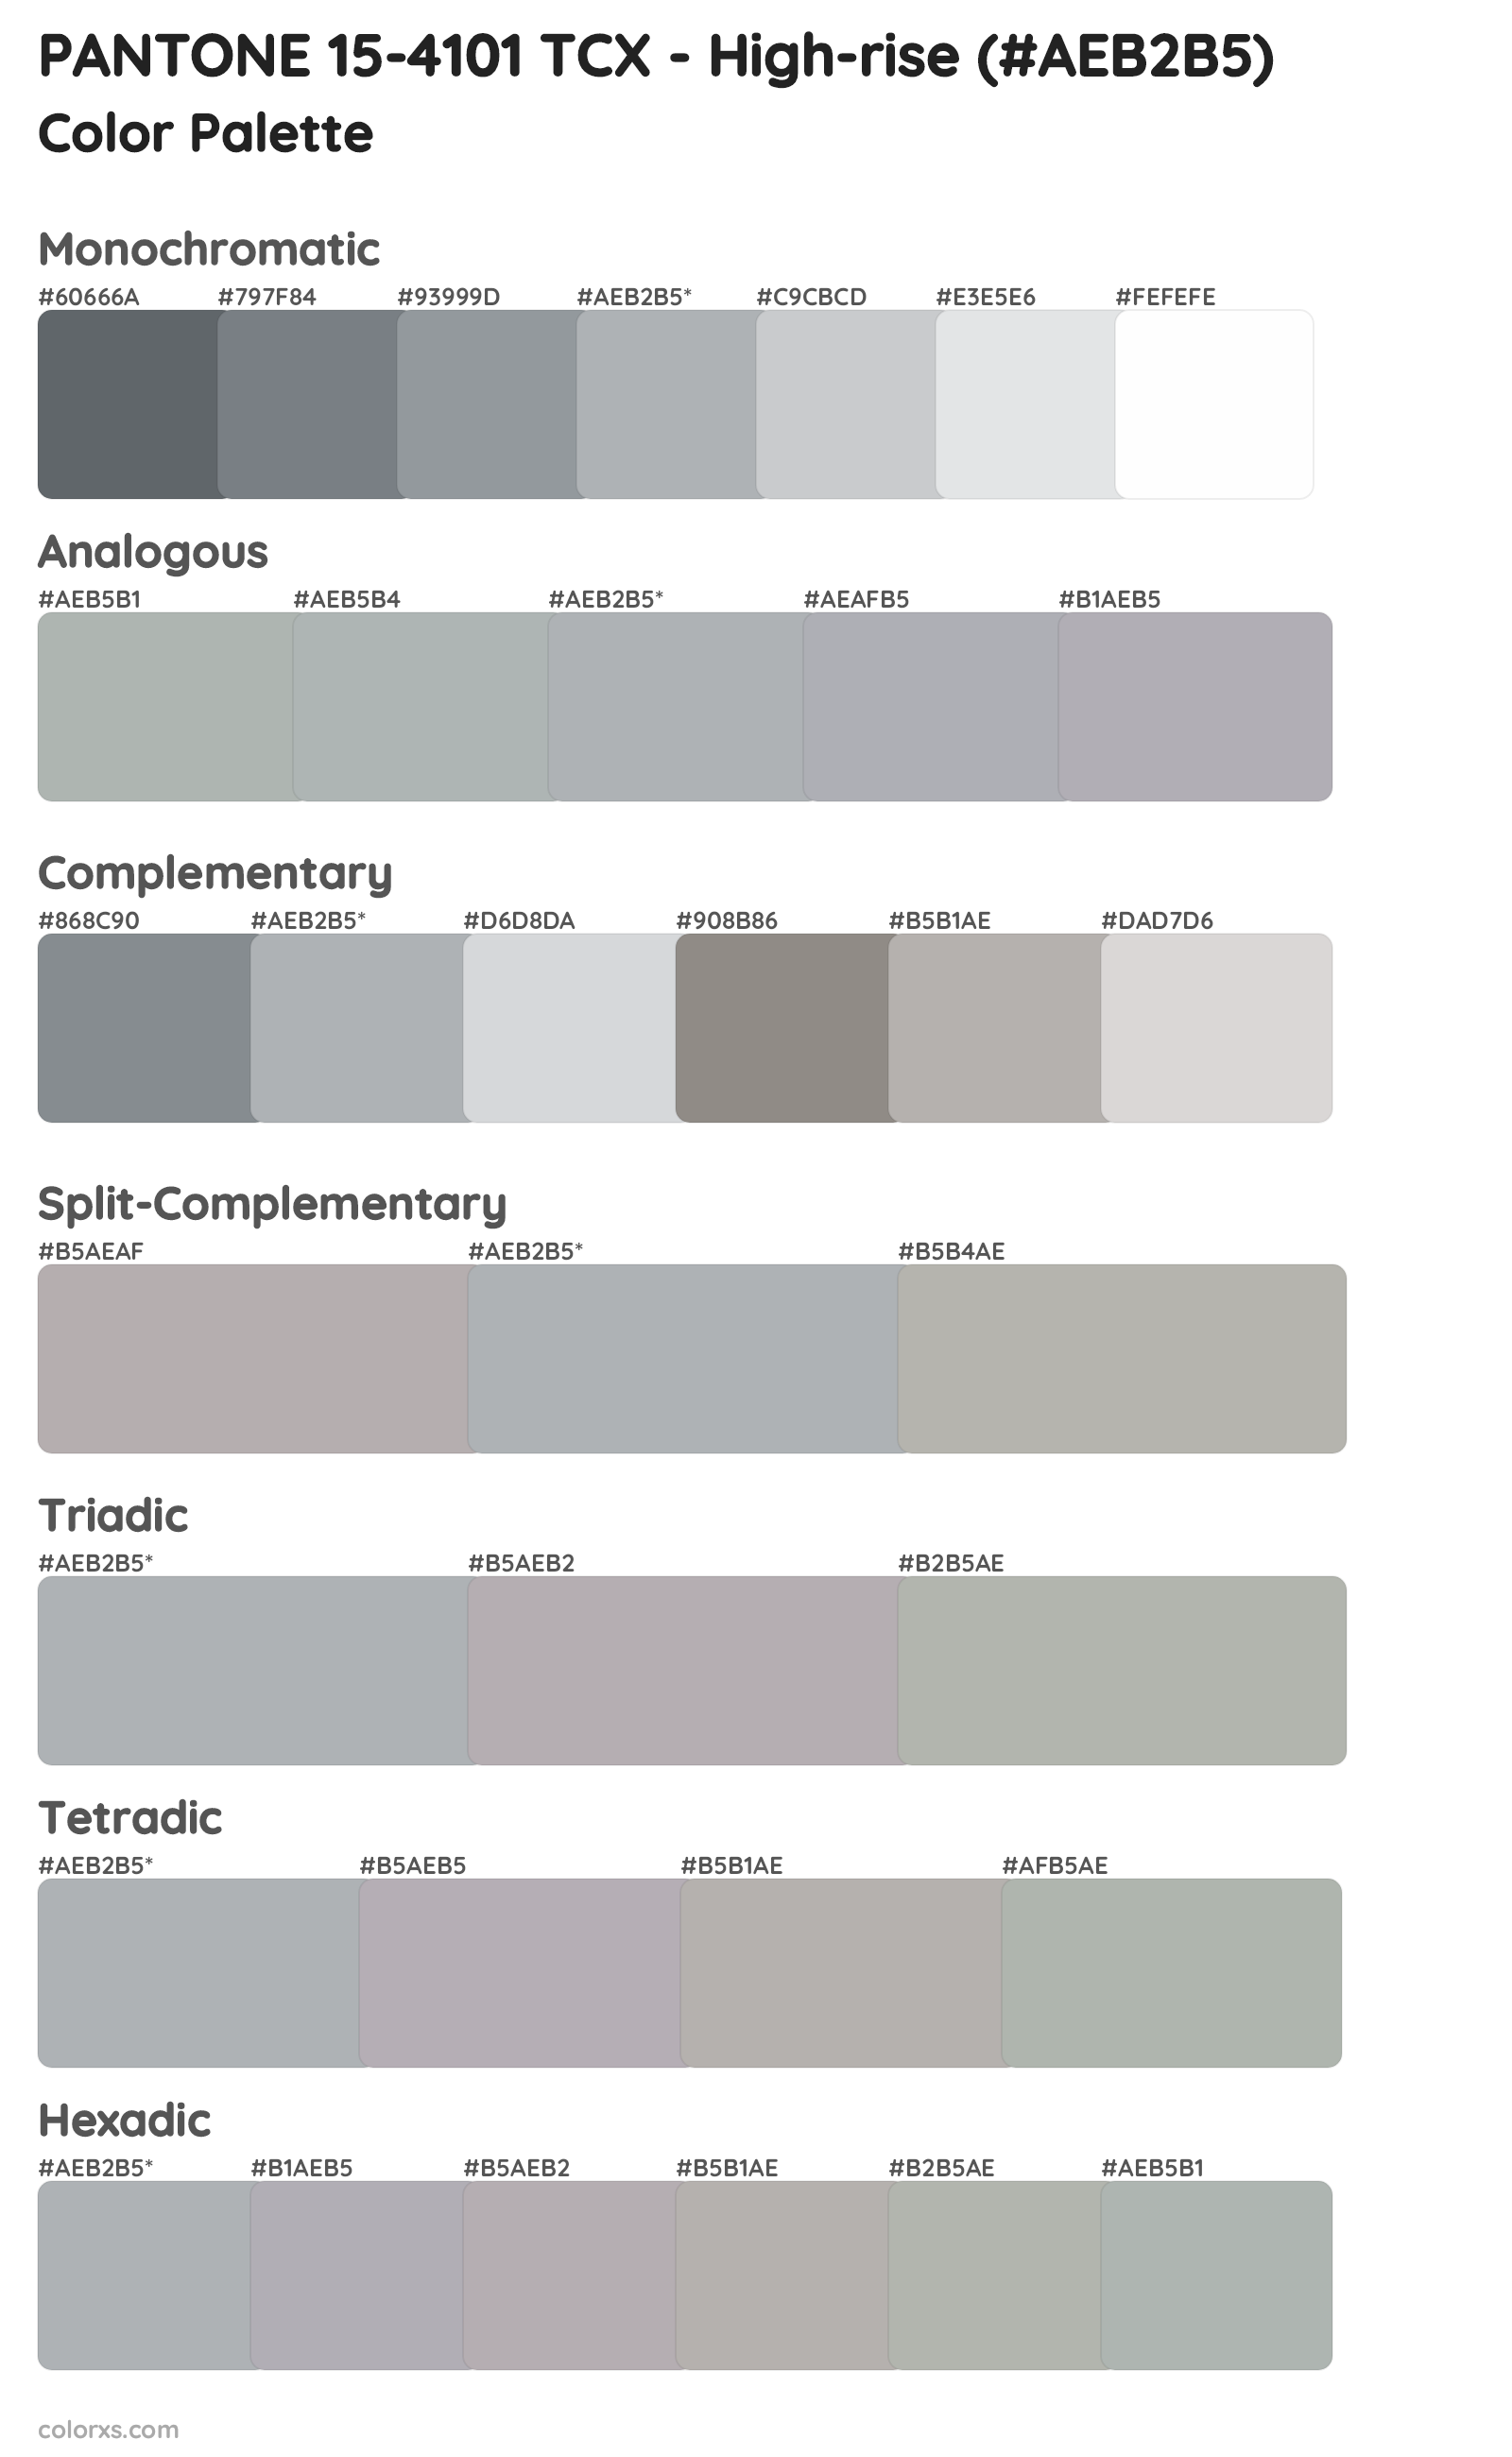 PANTONE 15-4101 TCX - High-rise Color Scheme Palettes